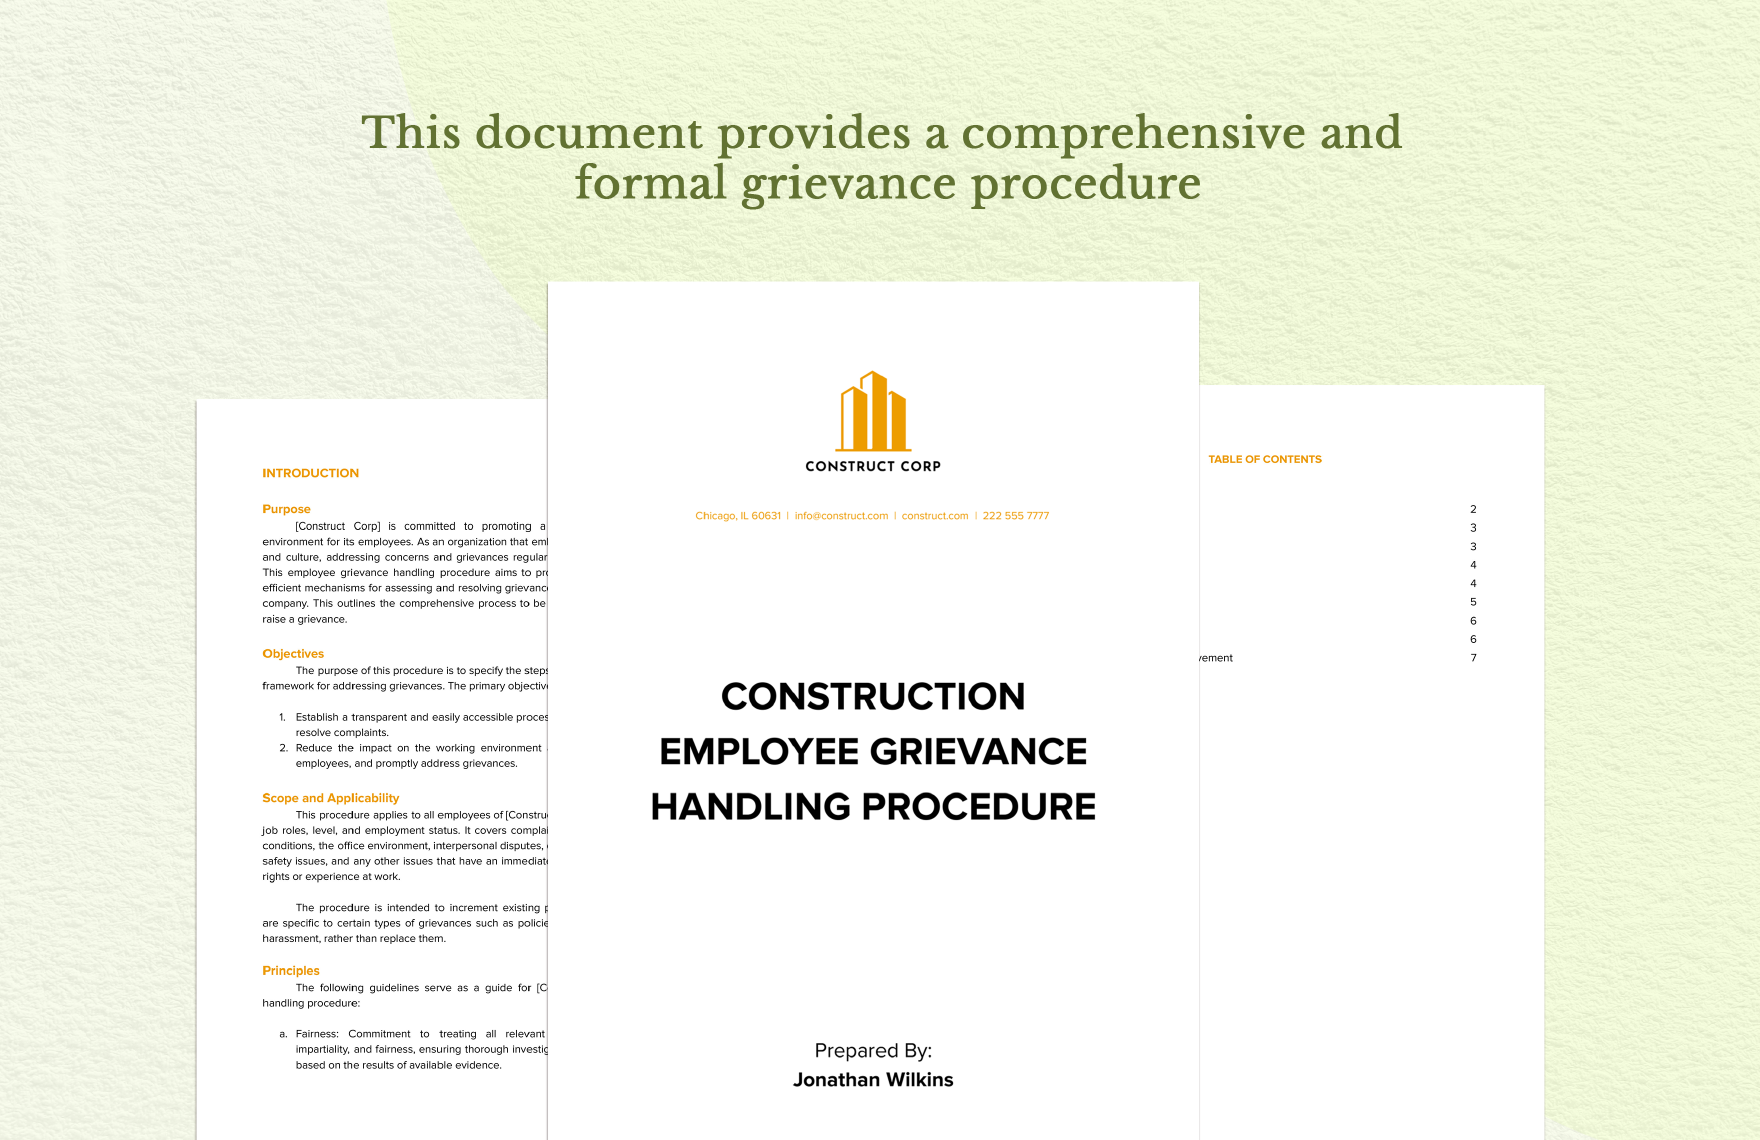 Construction Employee Grievance Handling Procedure